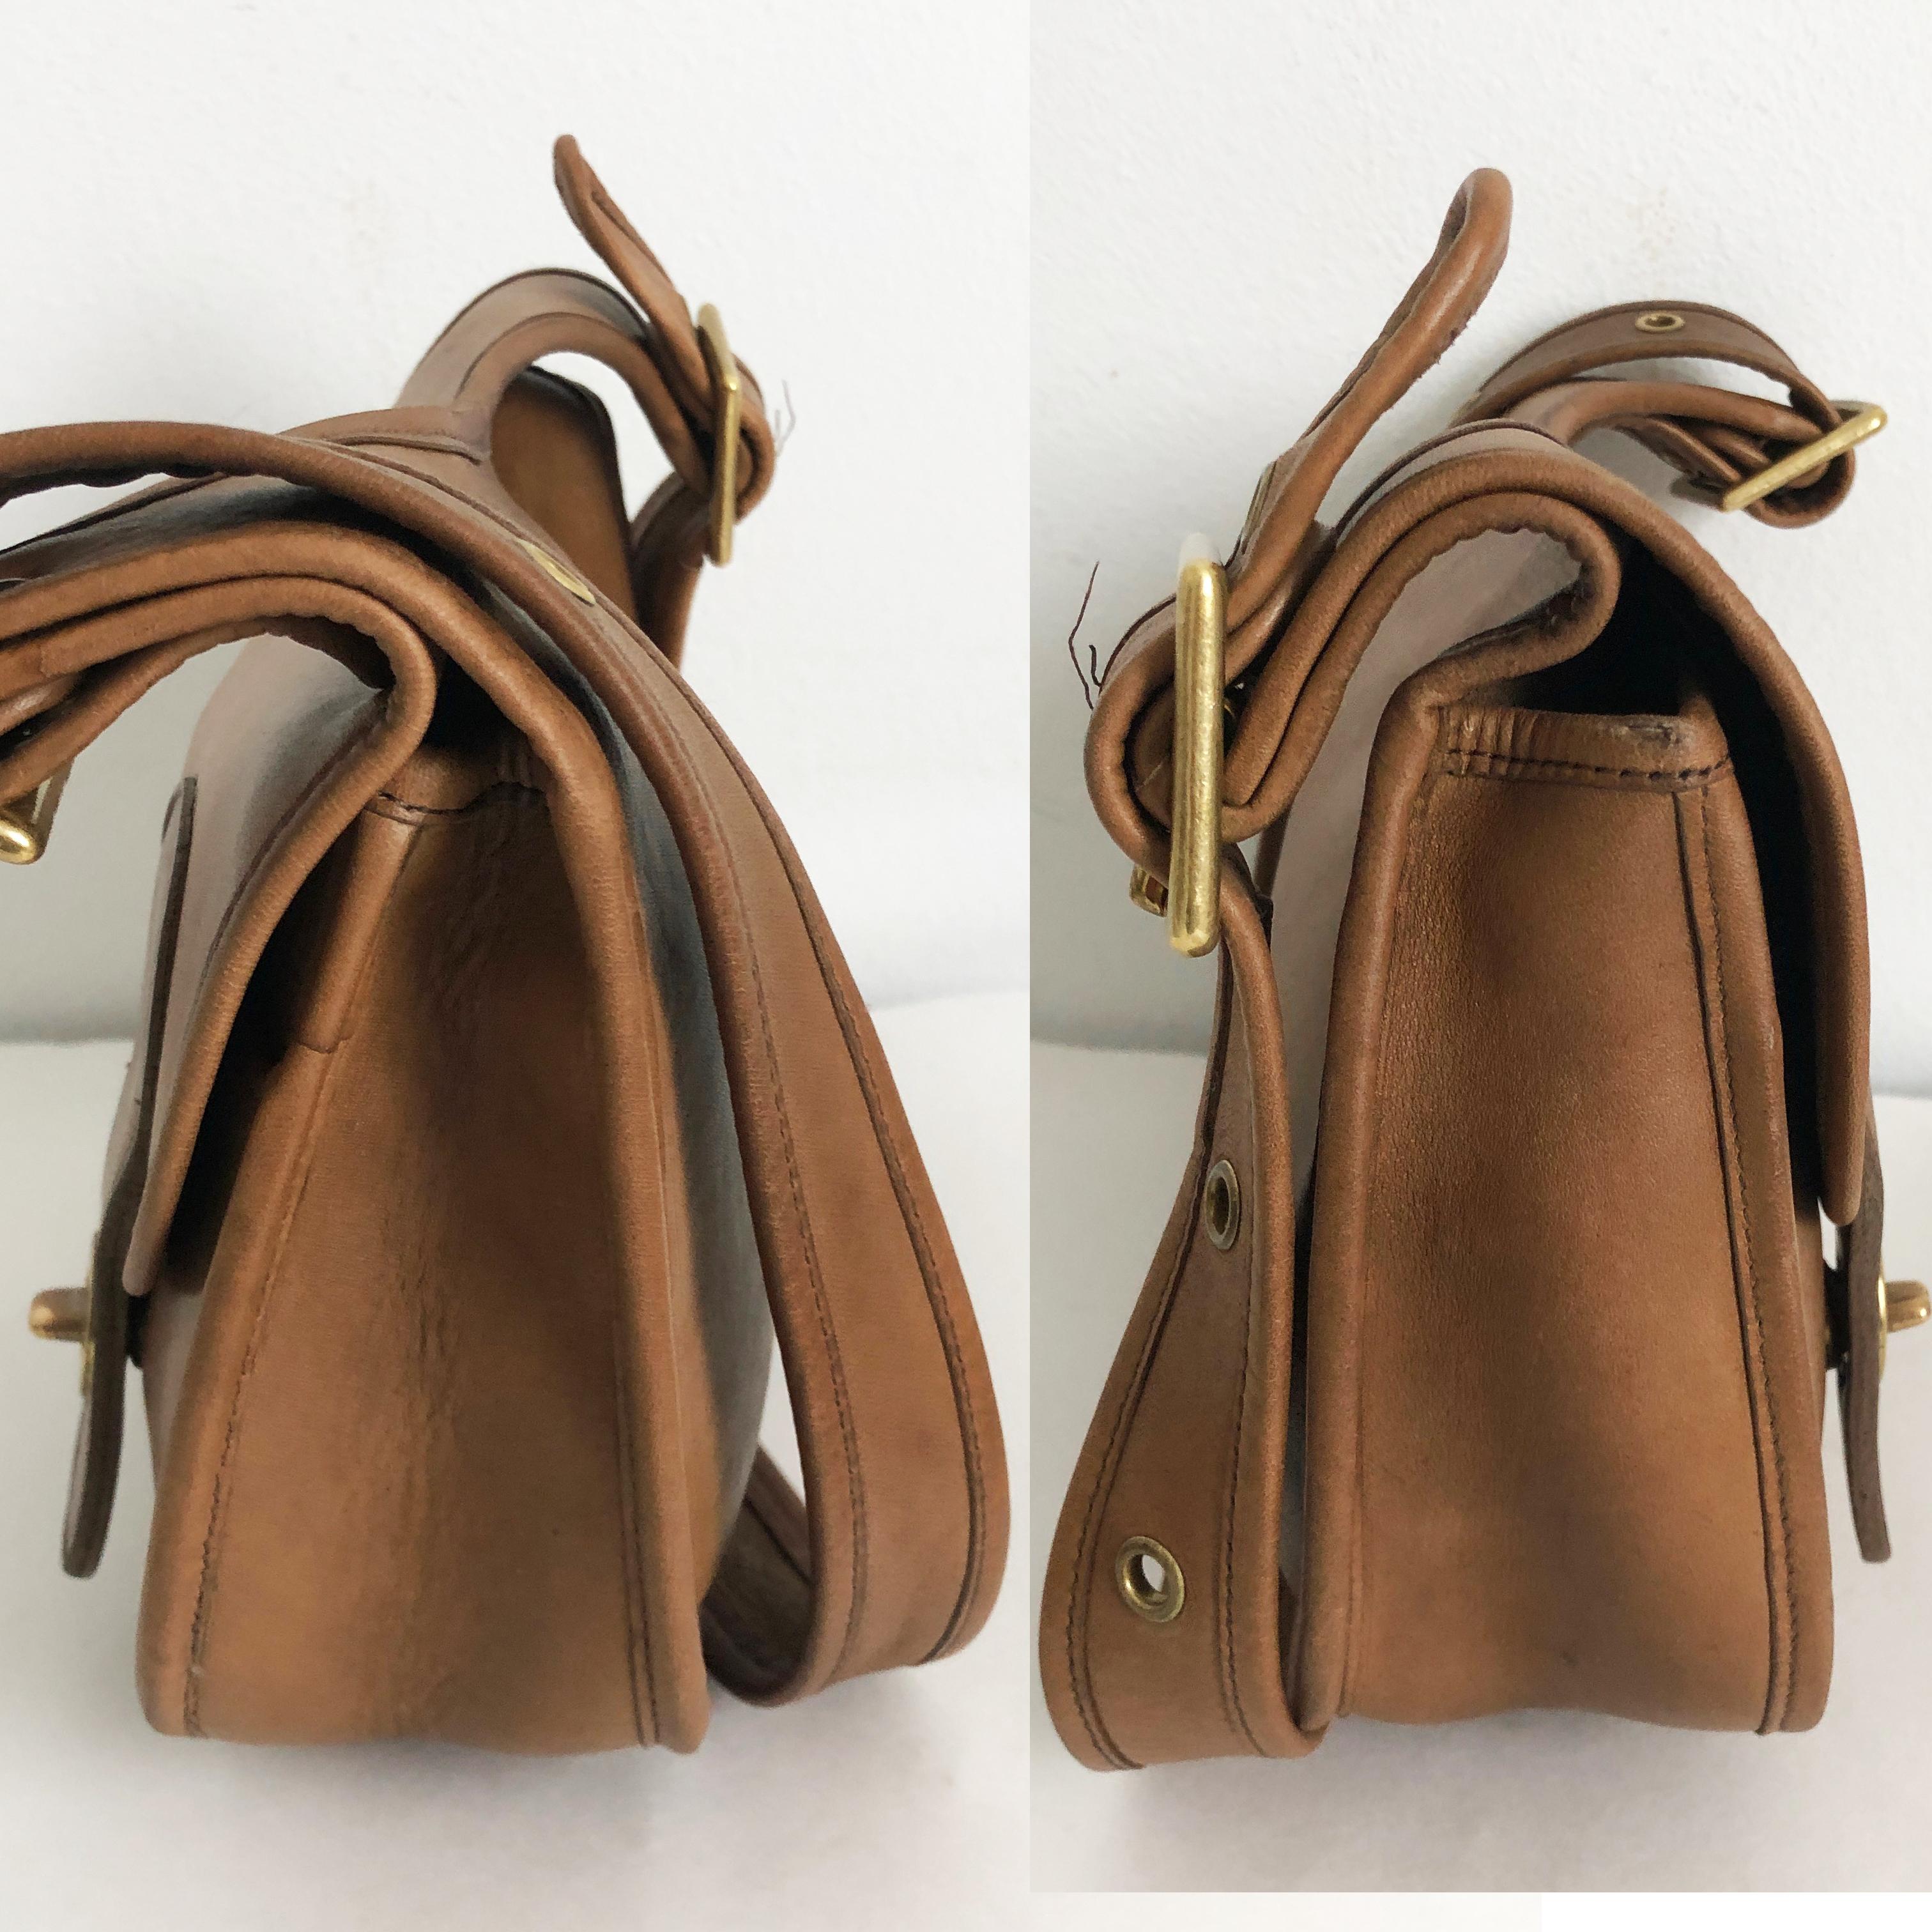  Cashin Coach Rare Pony Express Shoulder Bag Saddle Leather Vintage NYC Unisexe 